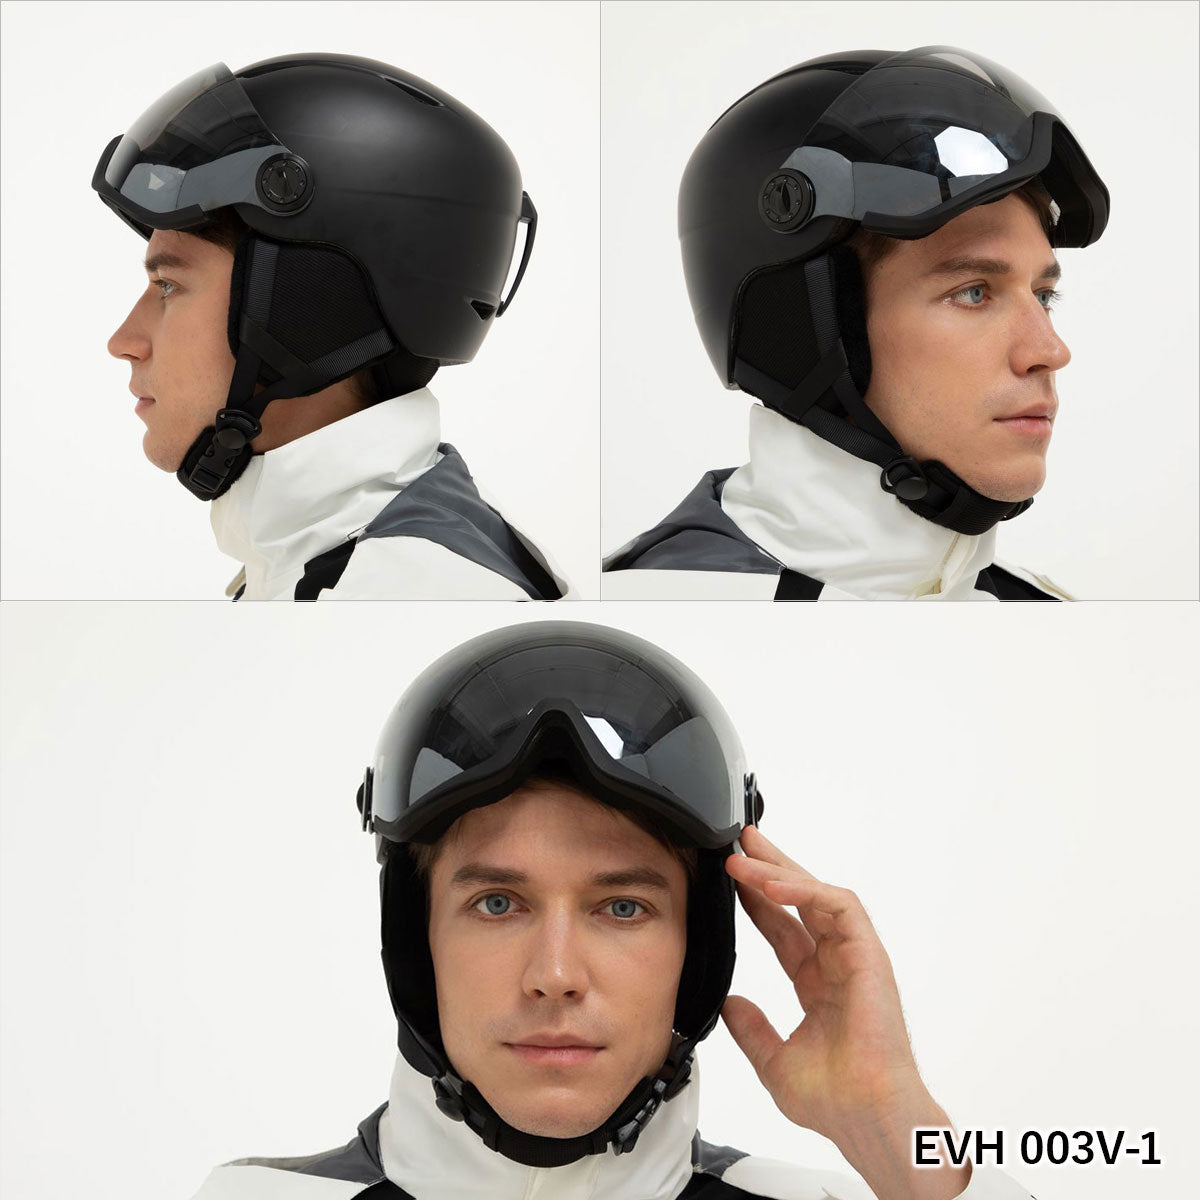 バイザー付き ヘルメット スキー スノーボード スノボ イヴァルブ EVOLVE EVH 003V 全3色 ウィンター スポーツ ゴーグル 一体型 ハードシェル